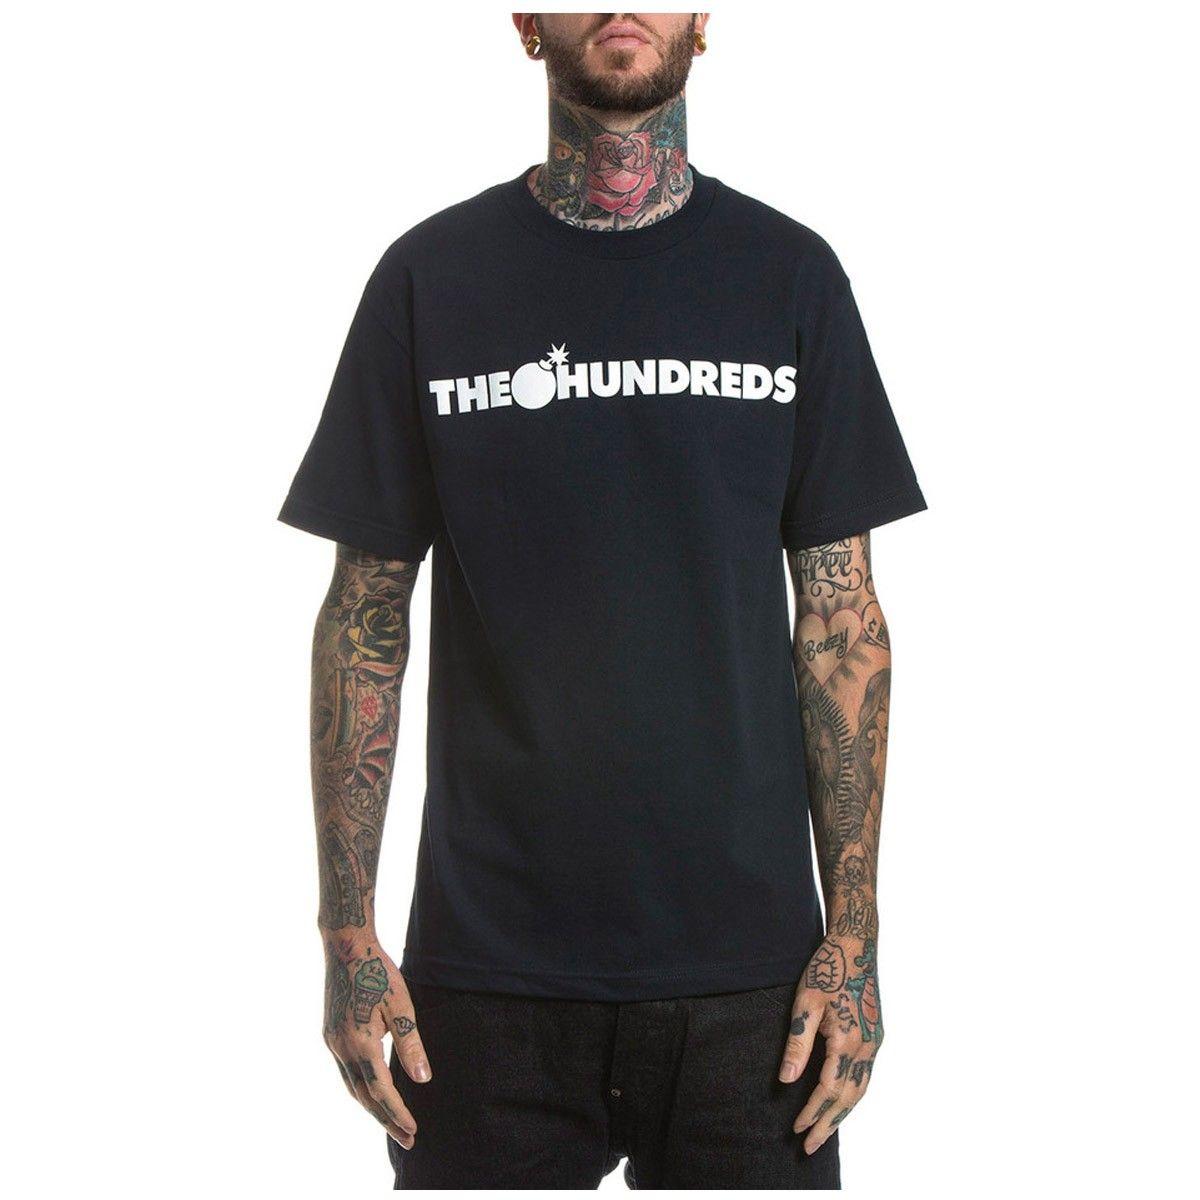 The Hundreds Clothing Logo - The Hundreds Forever Bar Logo T Shirt